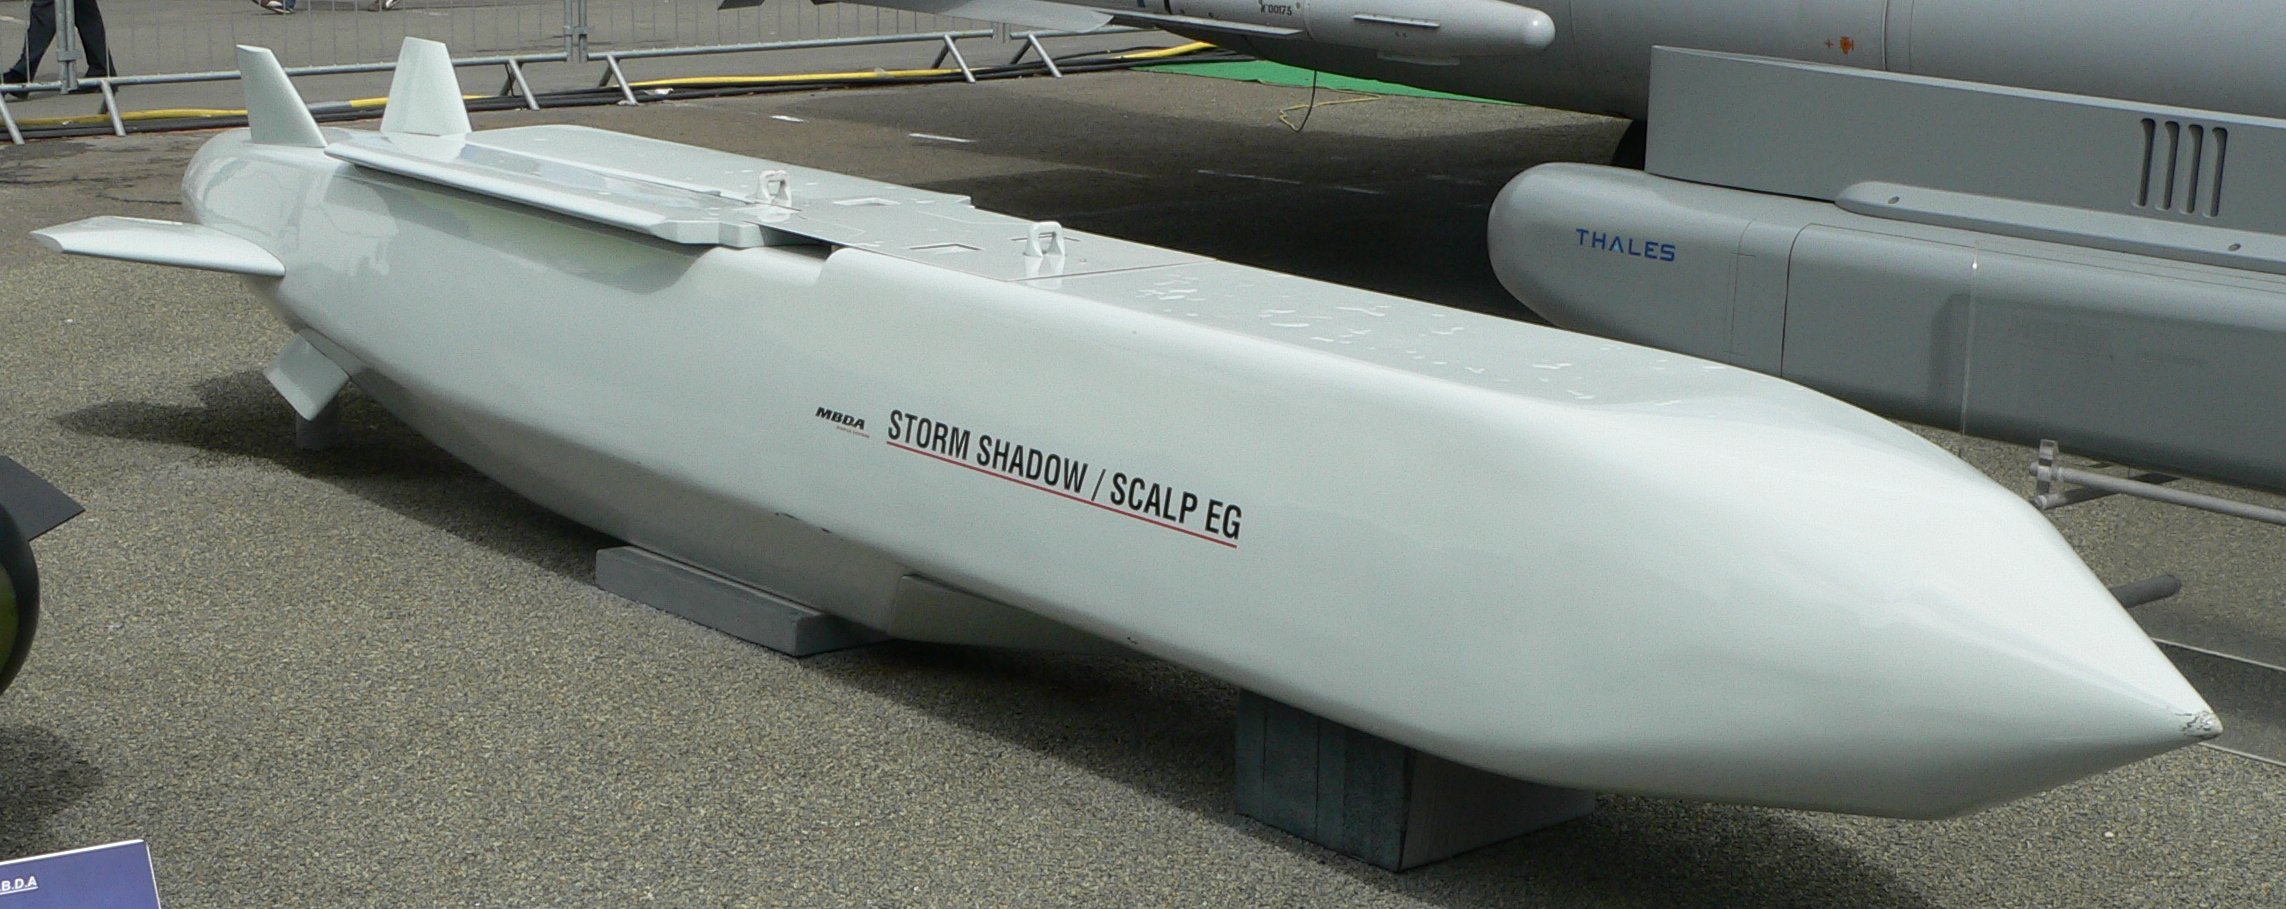 Tên lửa Storm Shadow do liên doanh MBDA, châu Âu sản xuất được lập trình trước khi khởi động nên có thể 